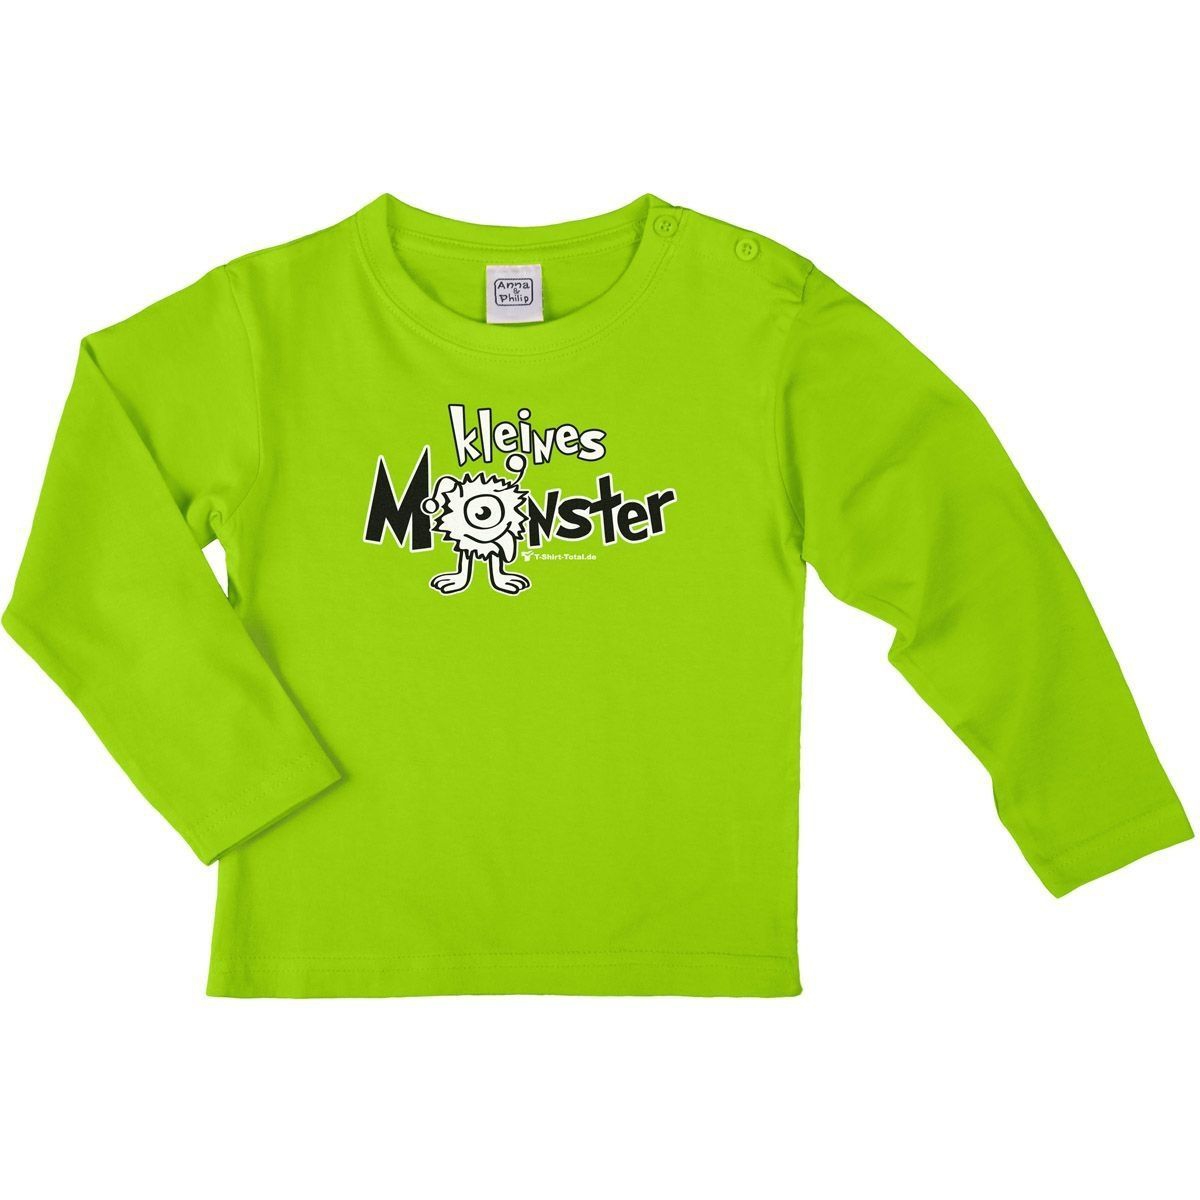 Kleines Monster Kinder Langarm Shirt hellgrün 110 / 116